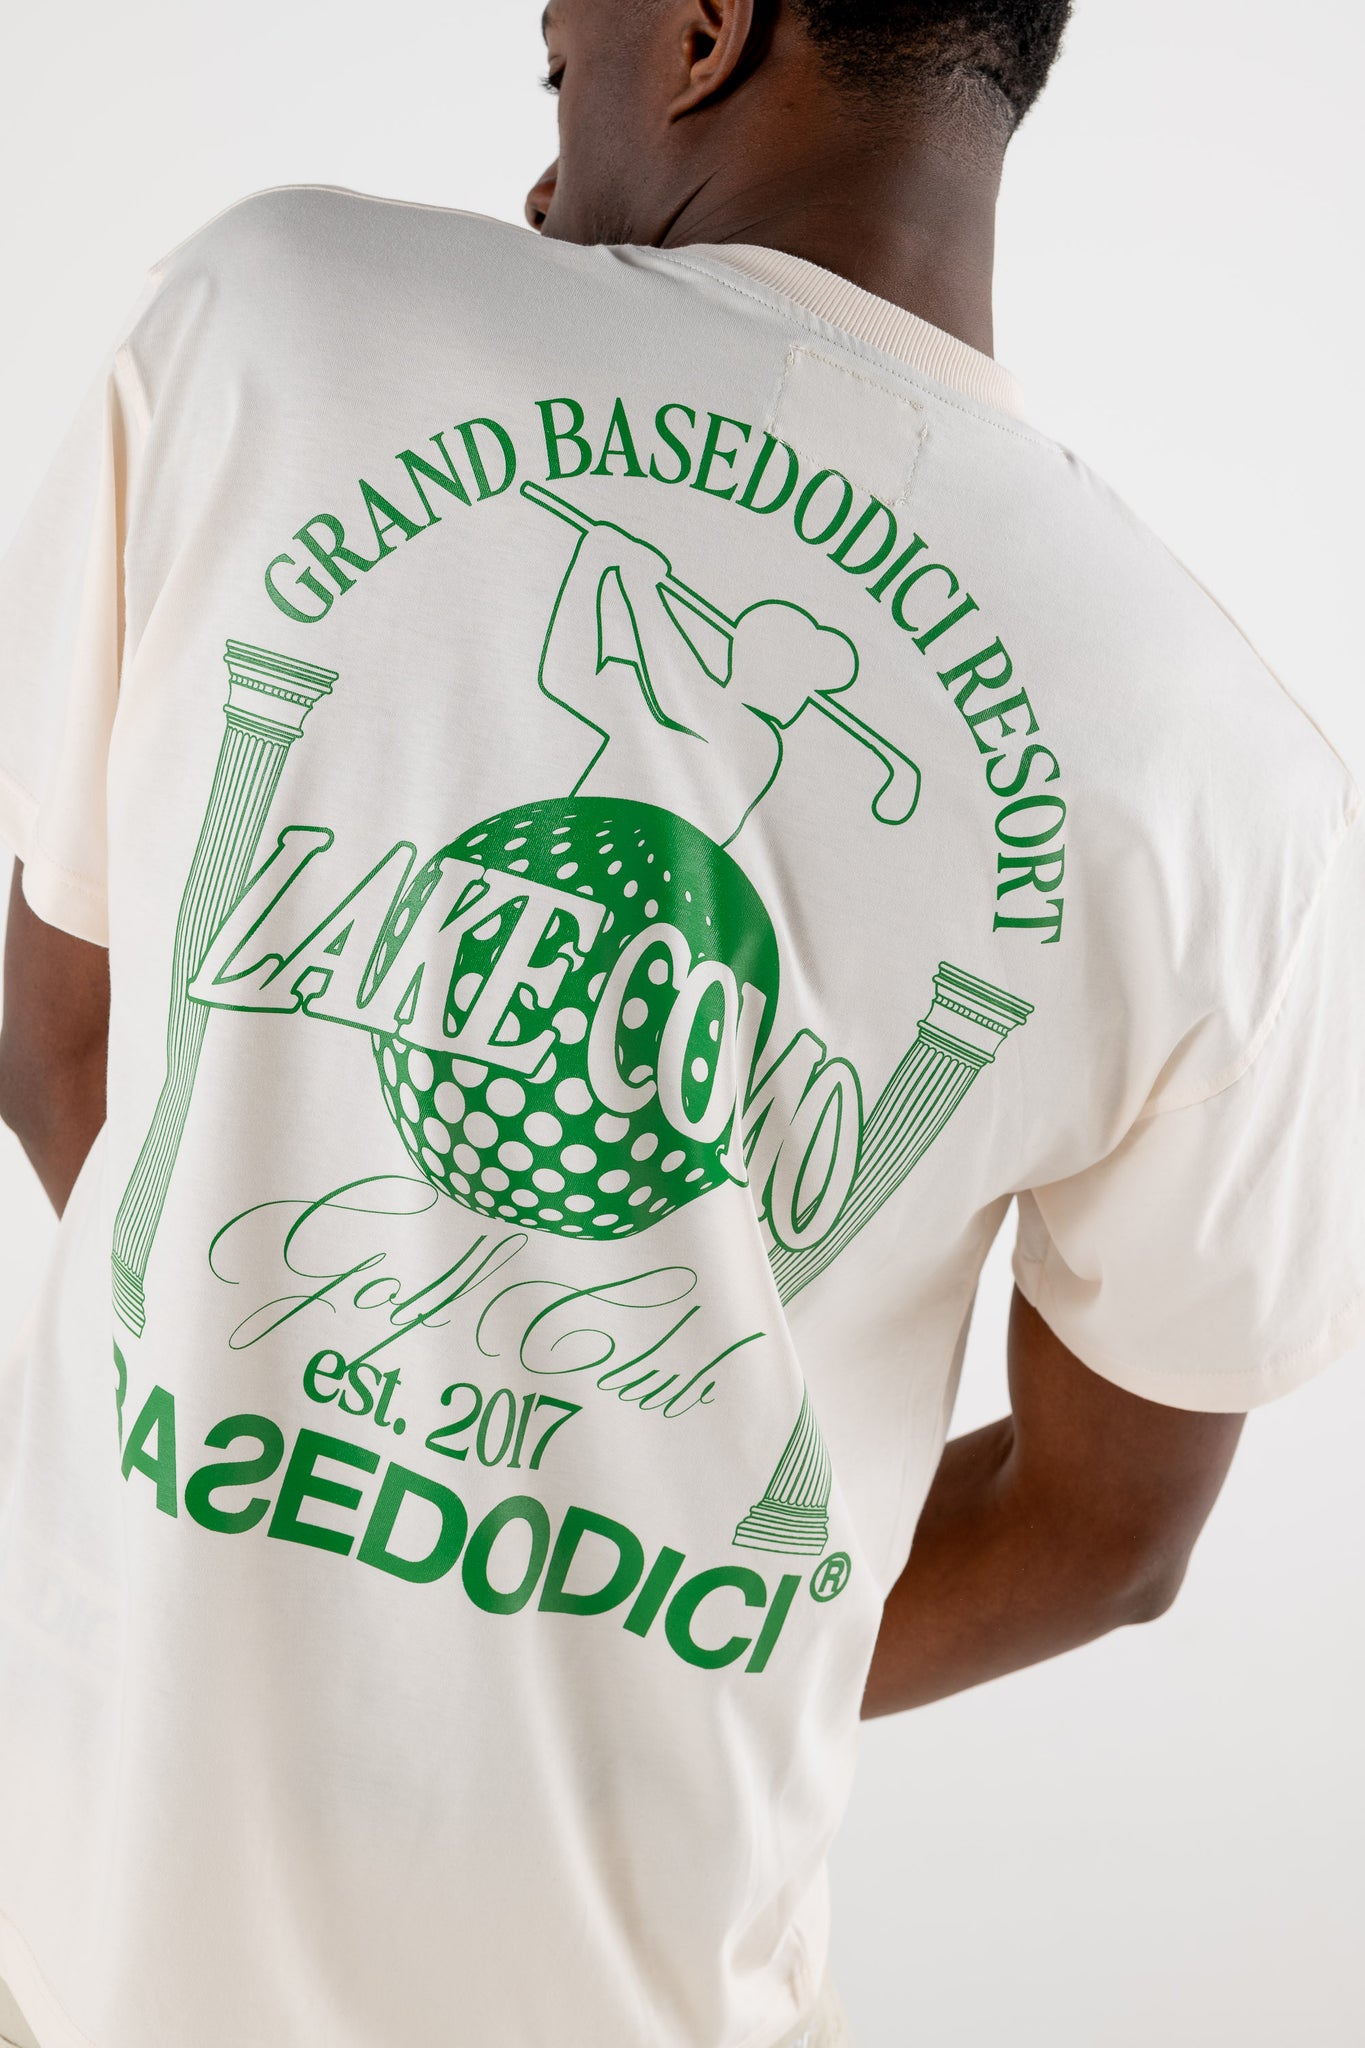 T-Shirt “RESORT” Grand Resort Cream